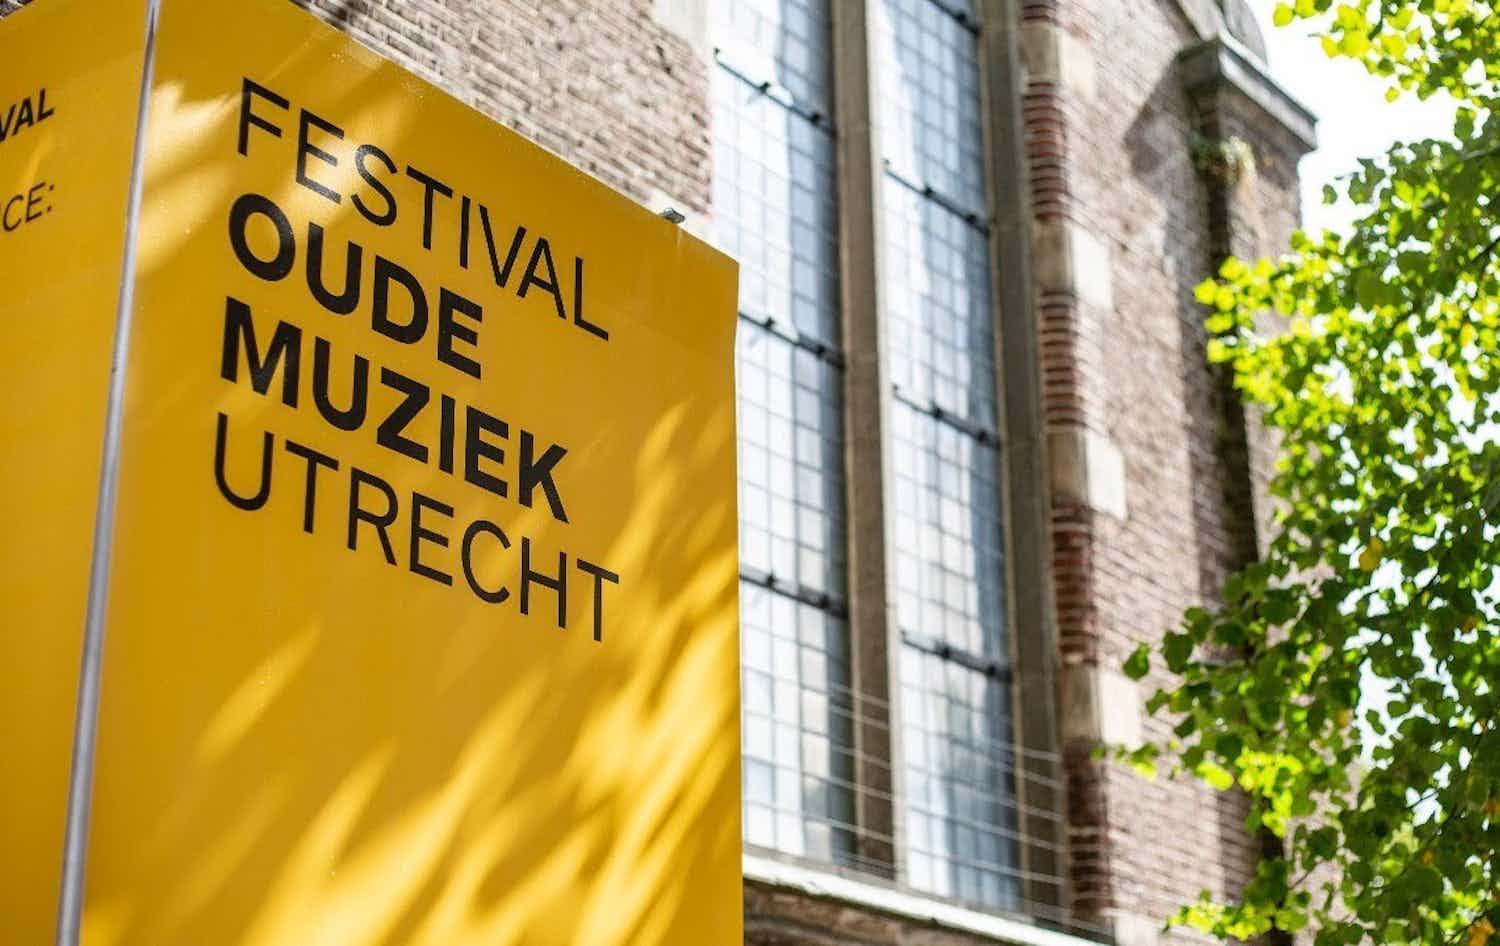 Festival Oude Muziek Utrecht